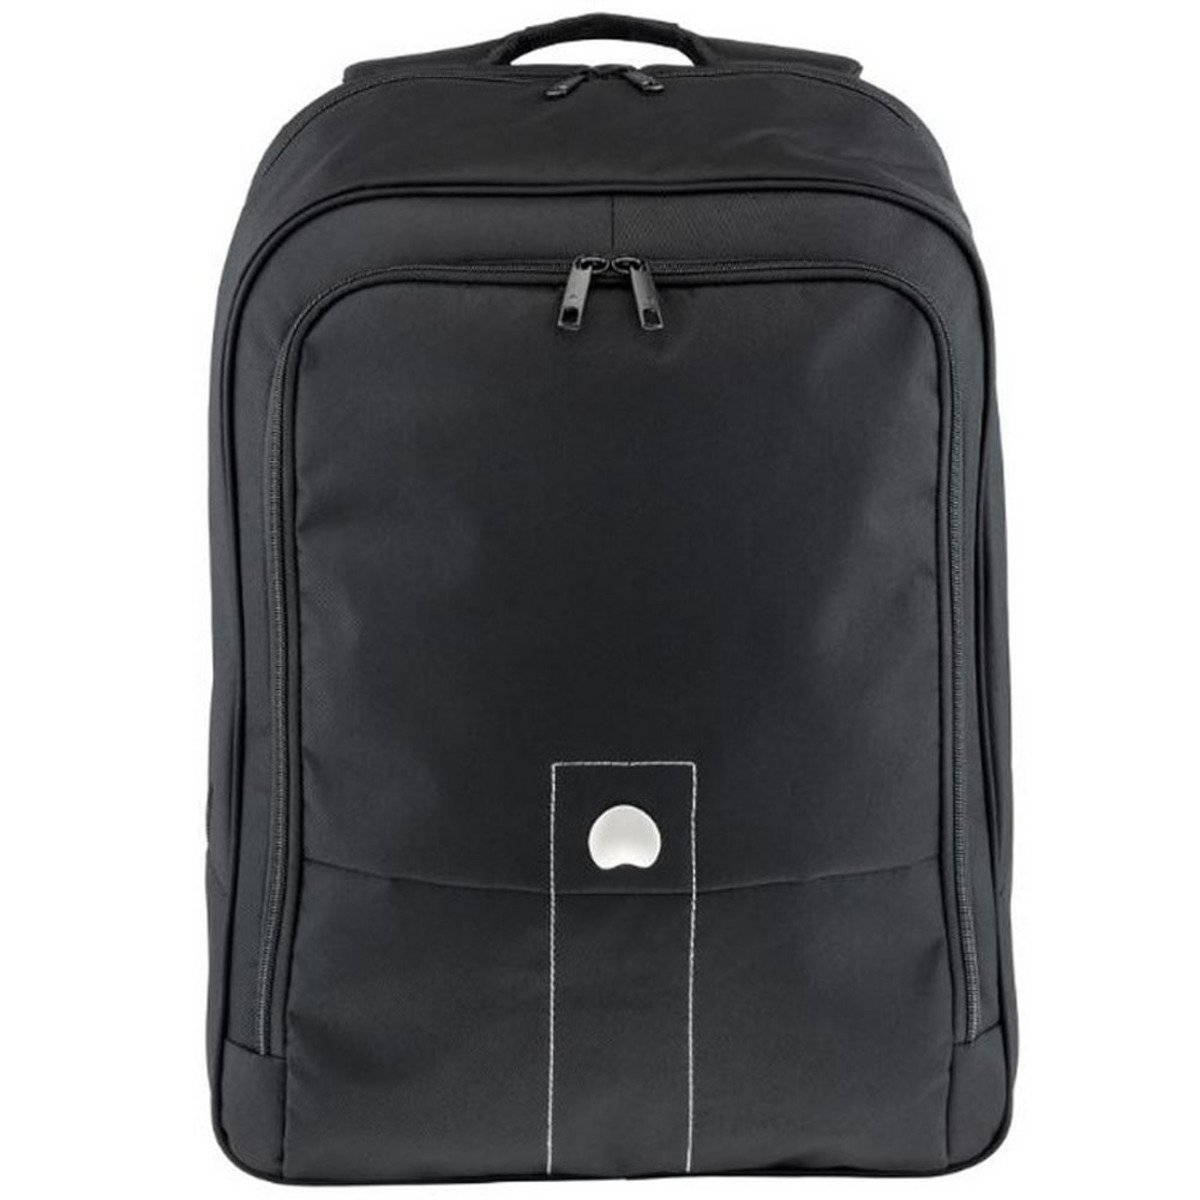 Delsey Villette Laptop Backpack 3180620 17.3inch